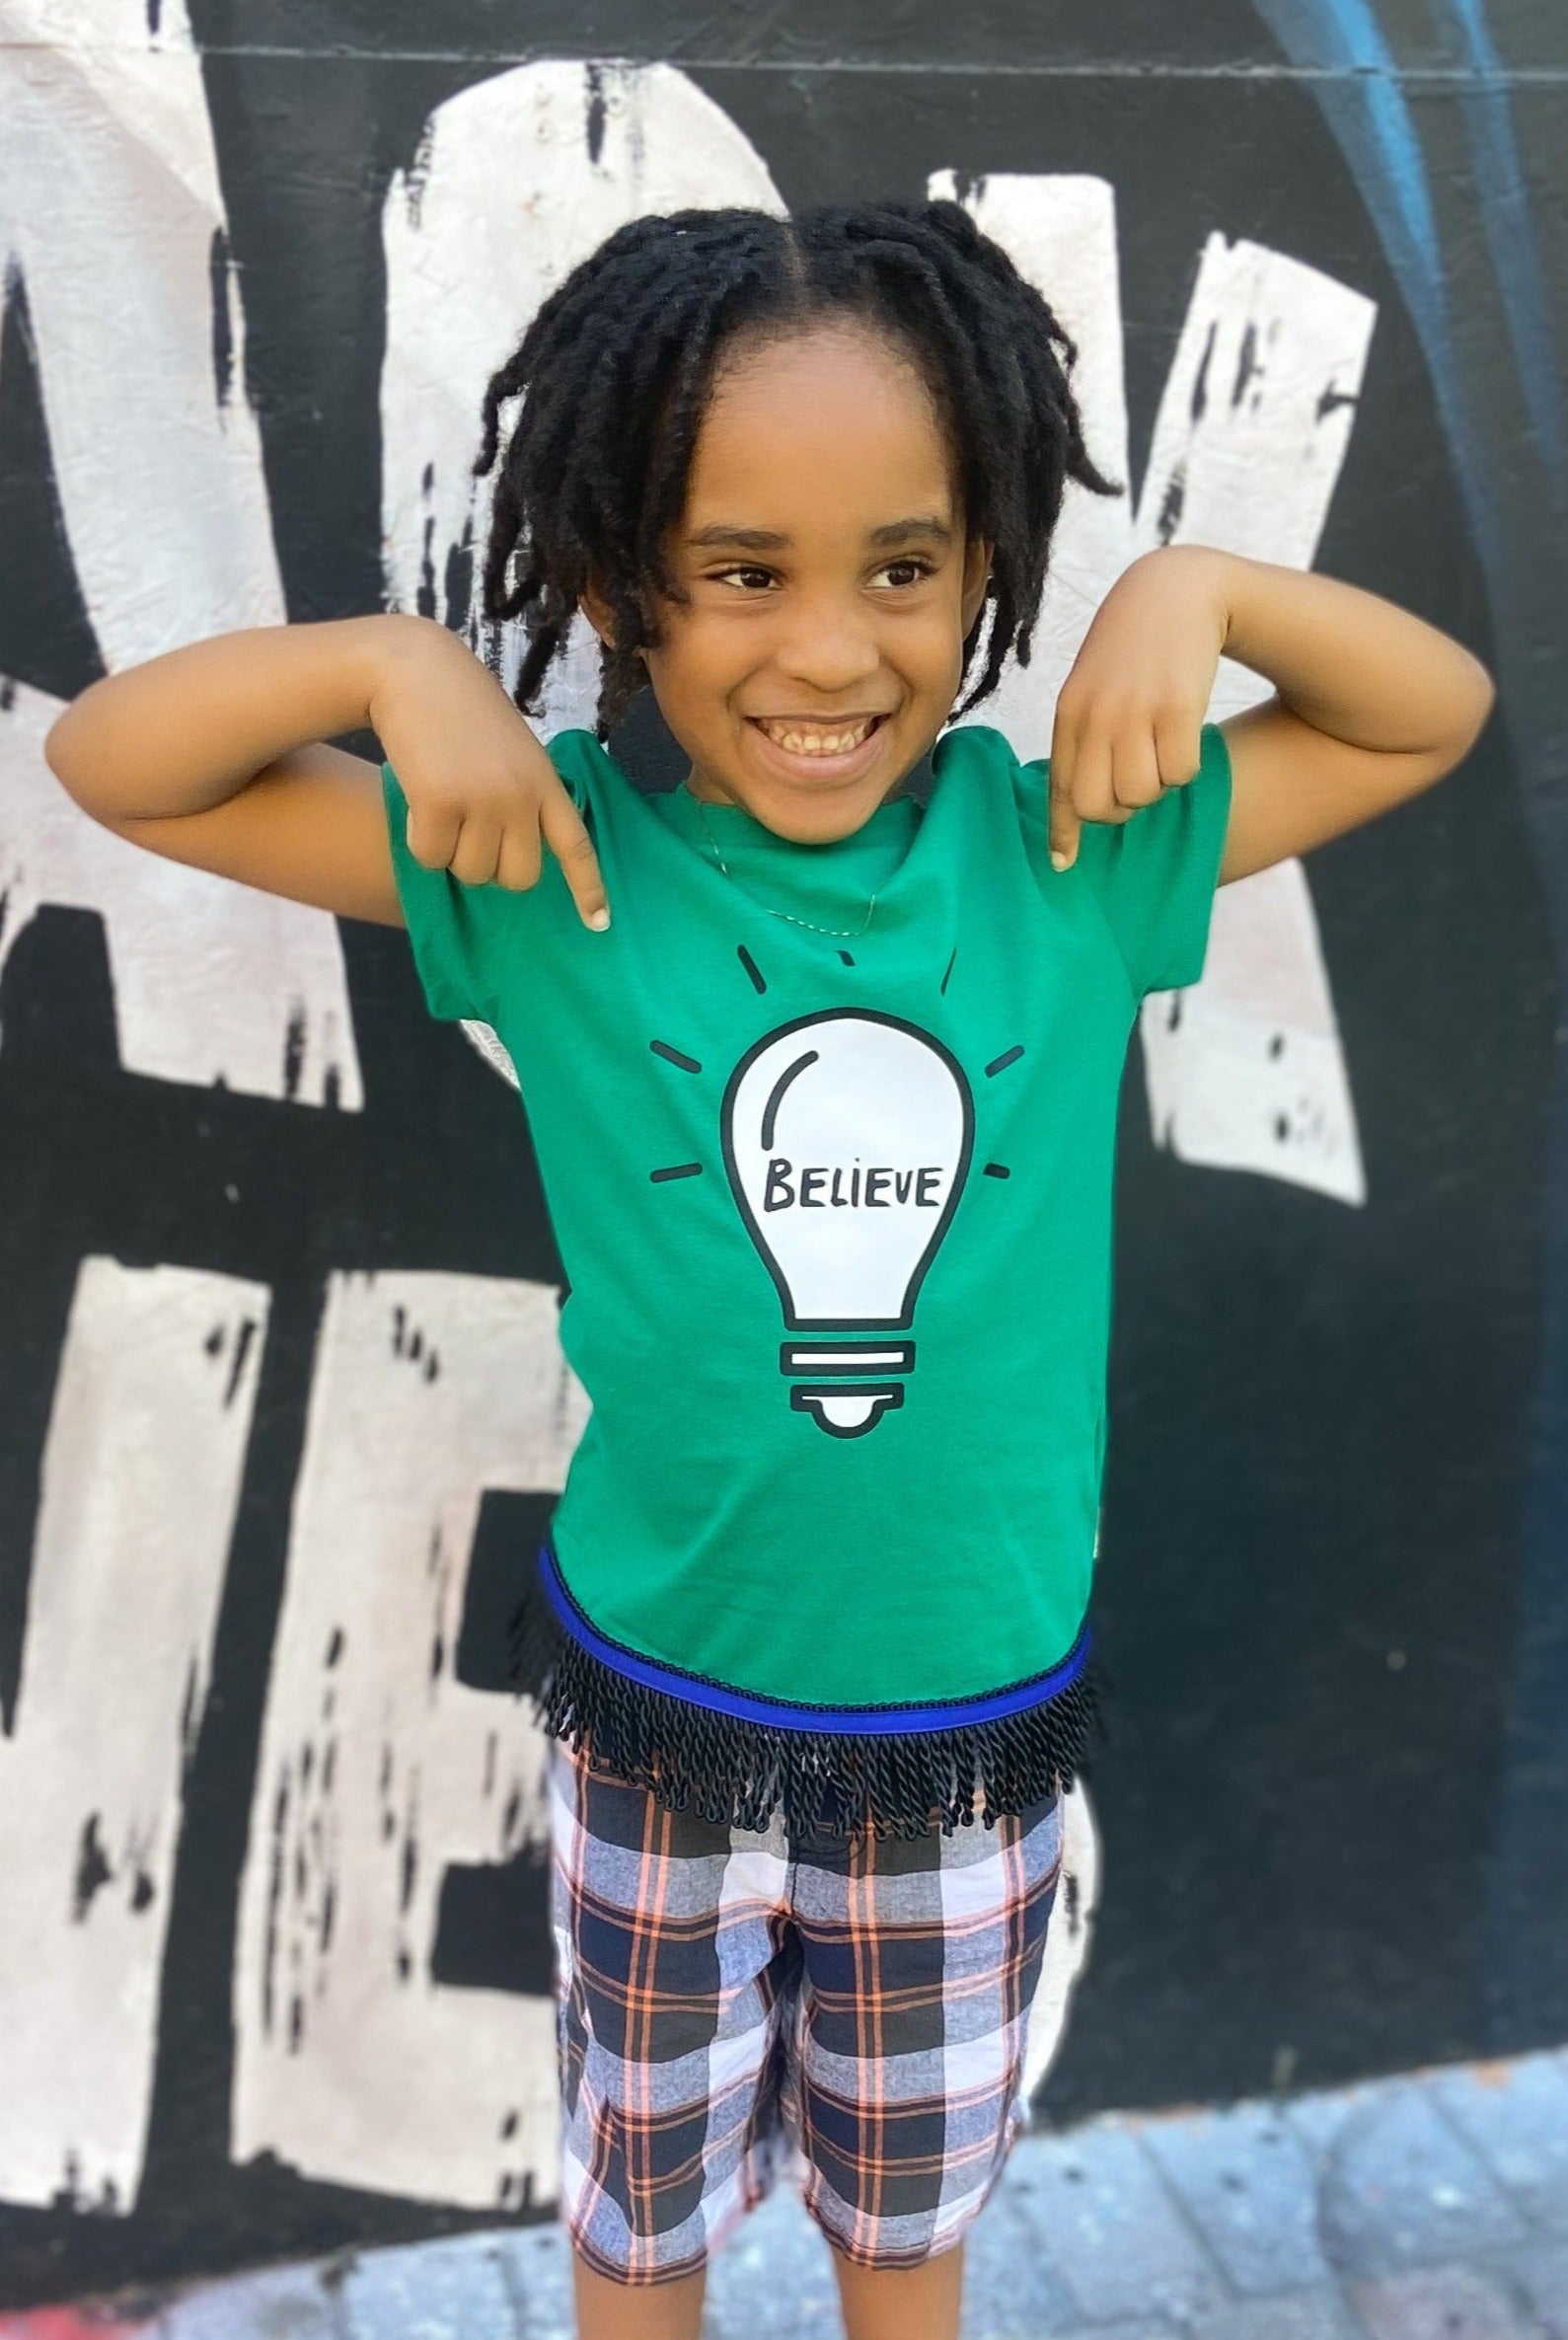 Be The Light (Believe) Children's T-Shirt